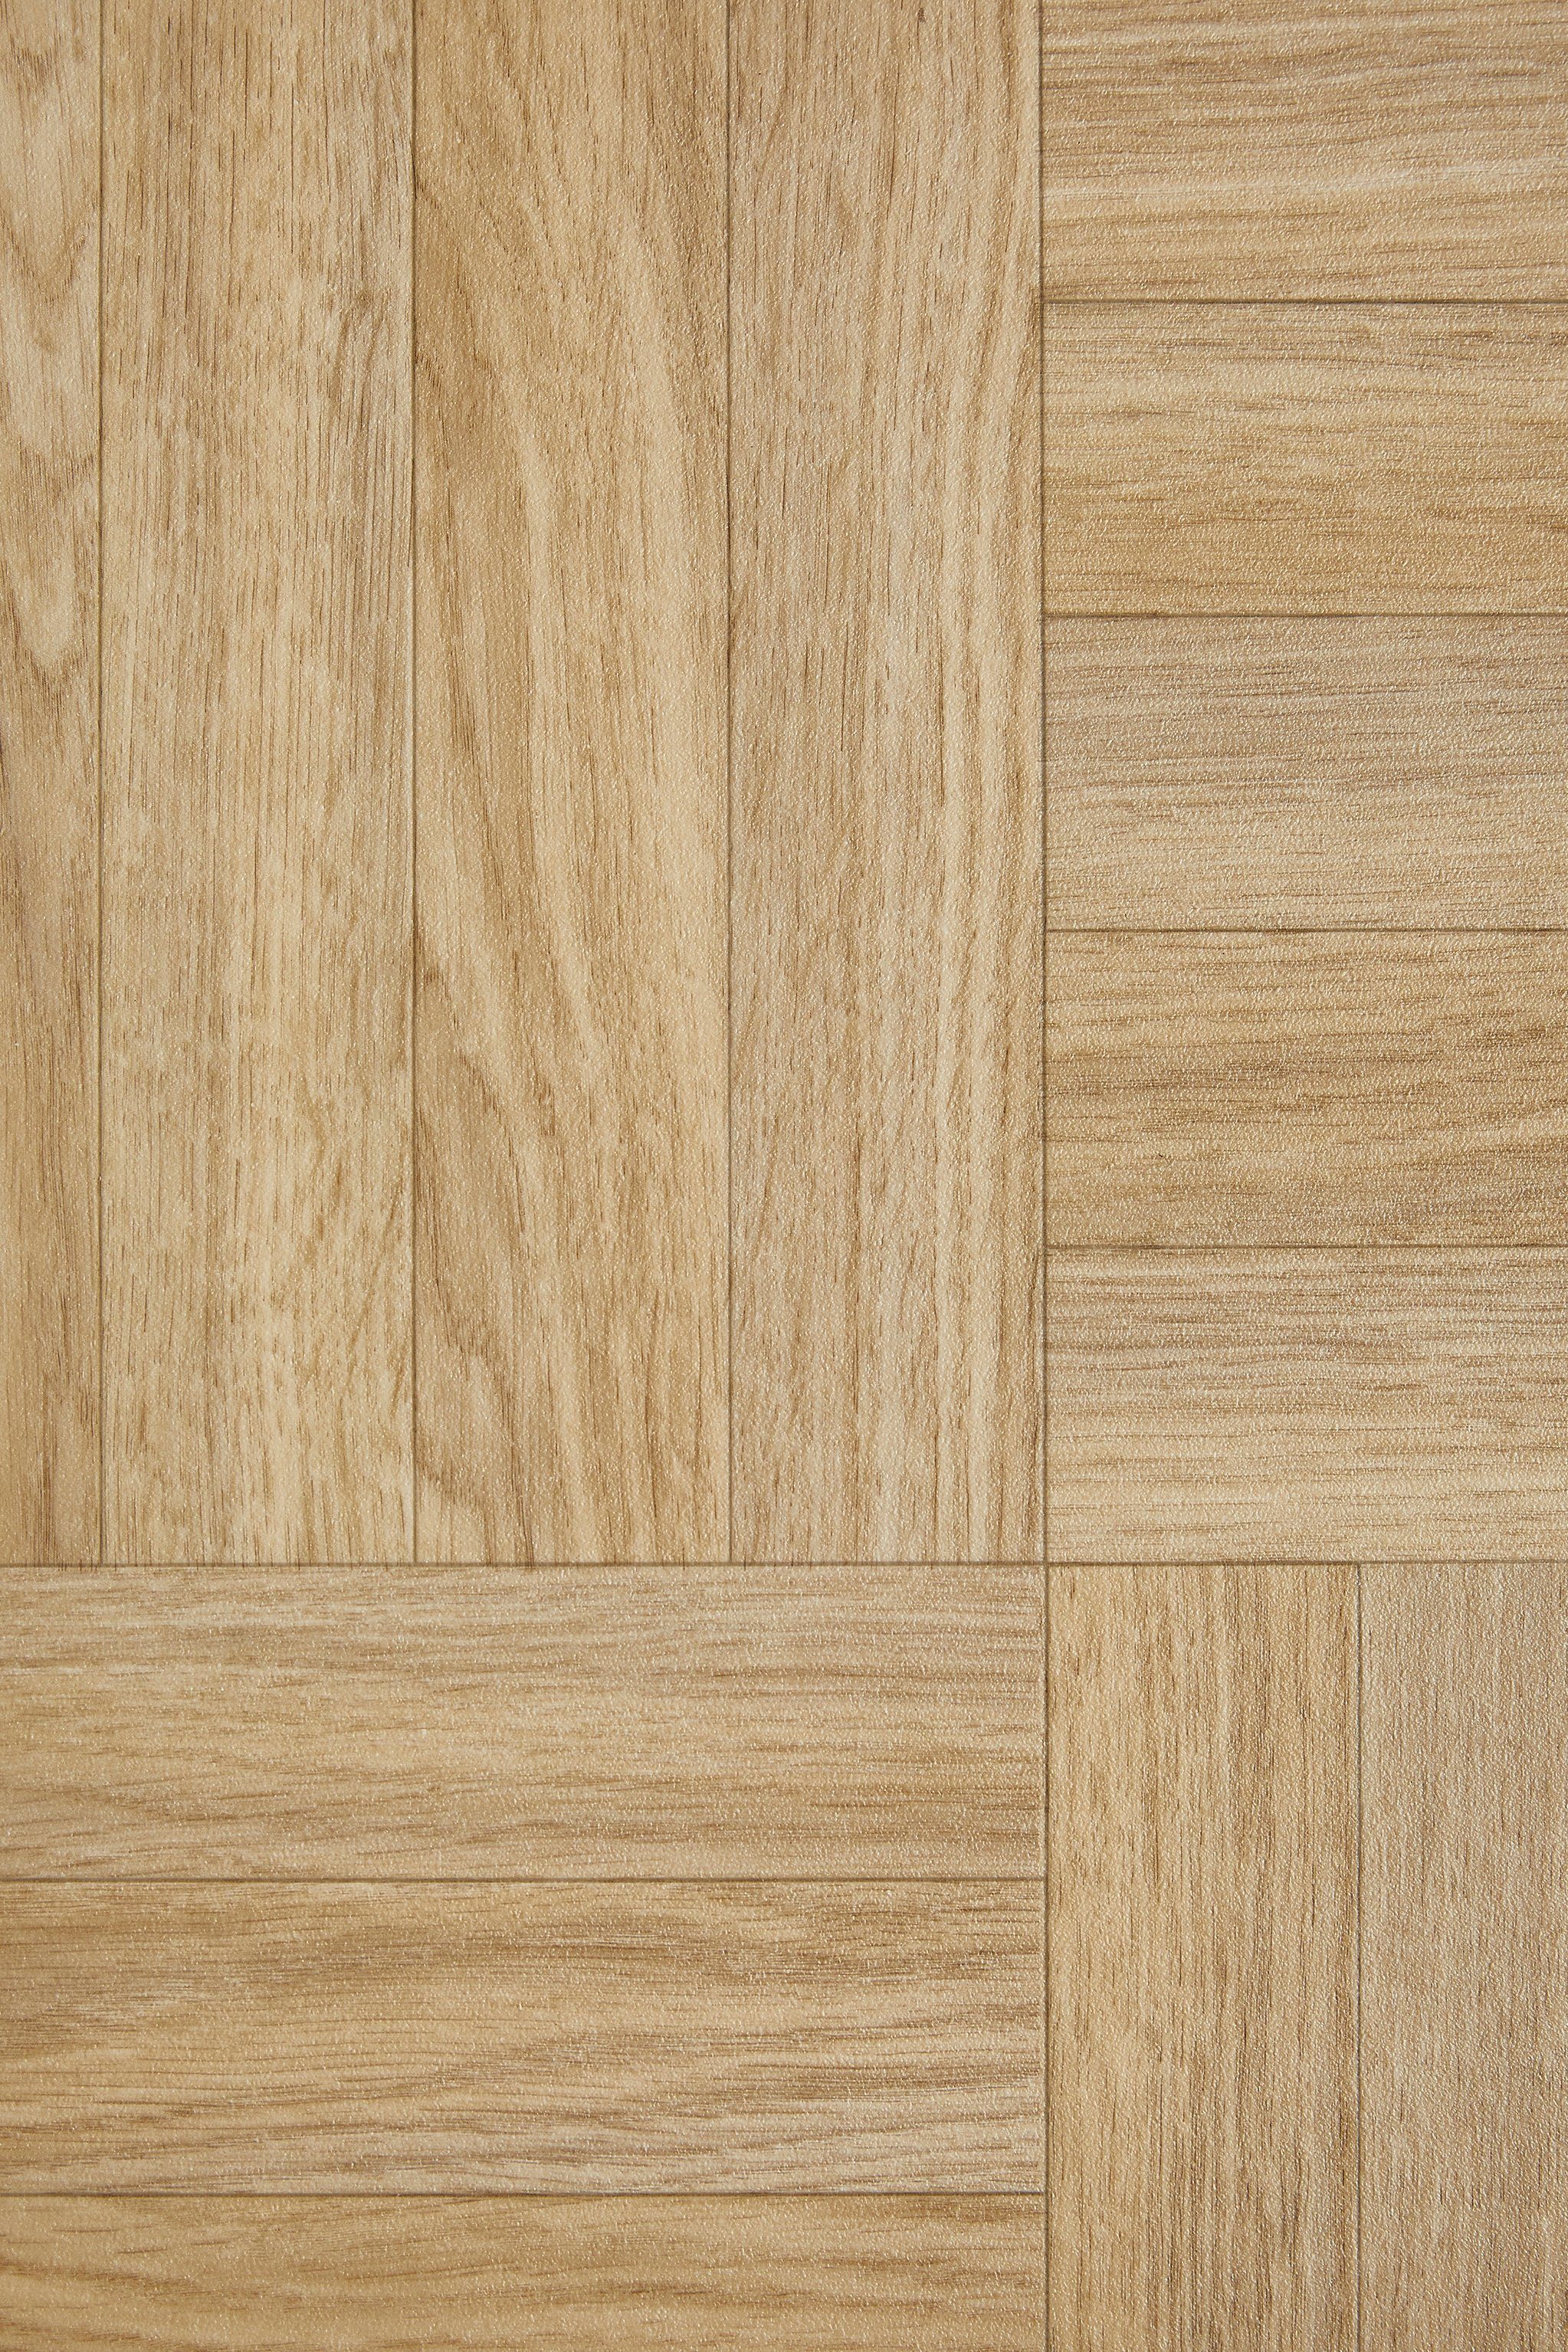 Andiamo Vinylboden Holzoptik, PVC Bodenbelag Meterware Breite 200 cm oder 400 cm, Stärke 2,8 mm beige-braun